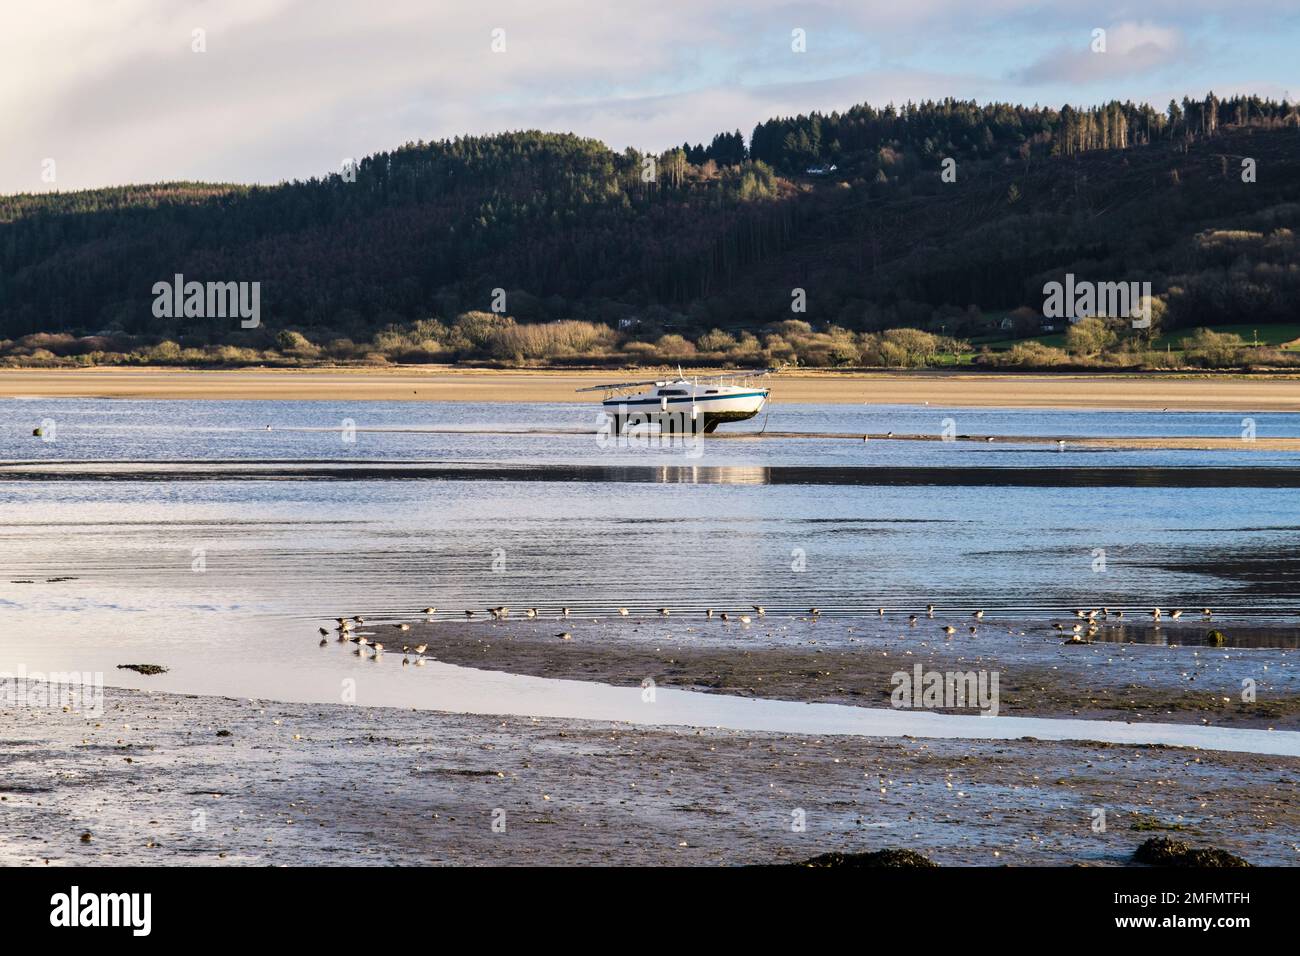 Un troupeau d'oiseaux à gué de Dunlin (Calidris alpina) se nourrit sur le rivage avant la marée entrante dans la baie de Red Wharf, à l'île d'Anglesey, au nord du pays de Galles, au Royaume-Uni Banque D'Images